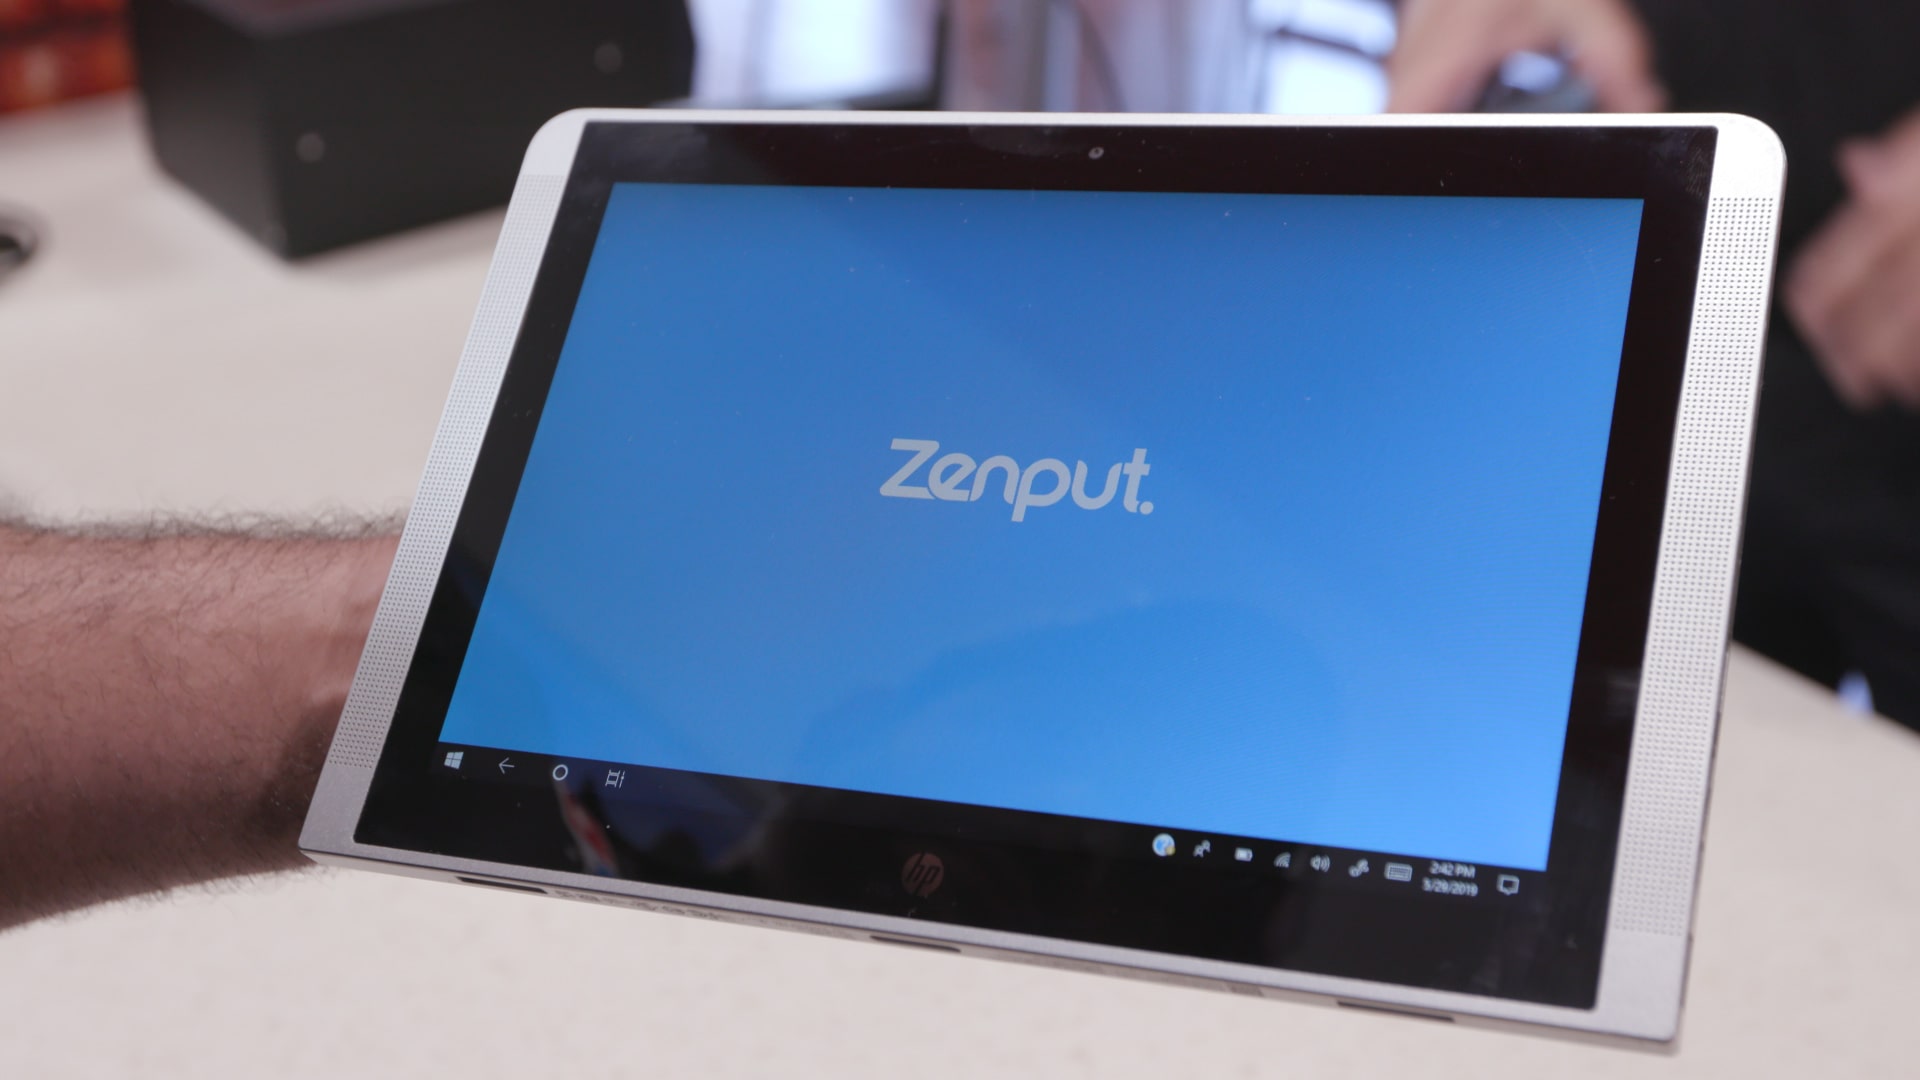 zenput on a tablet